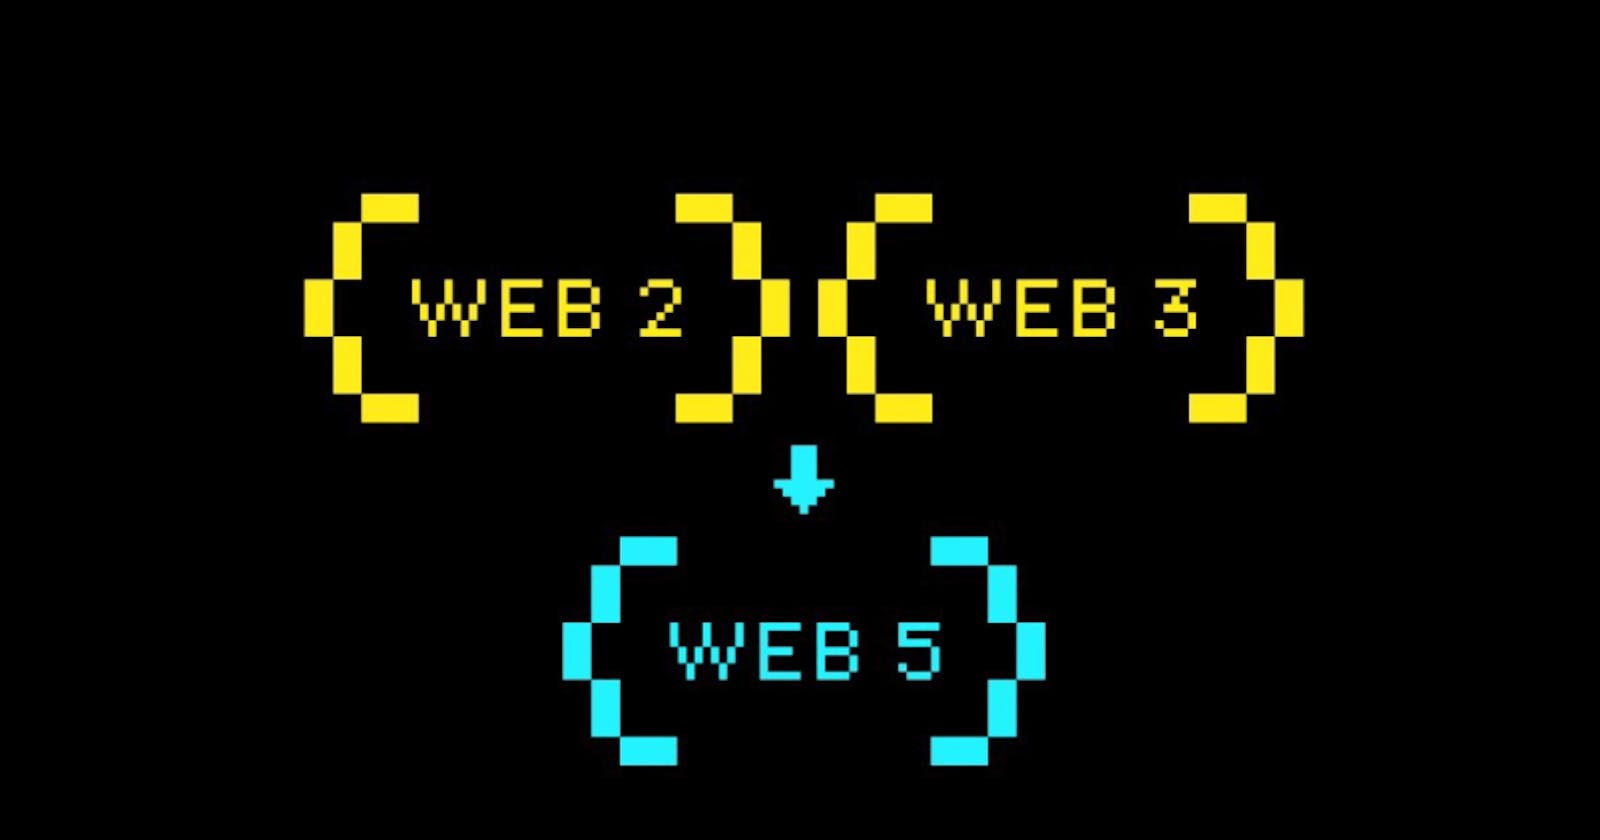 Web5: A Decentralized Web Platform